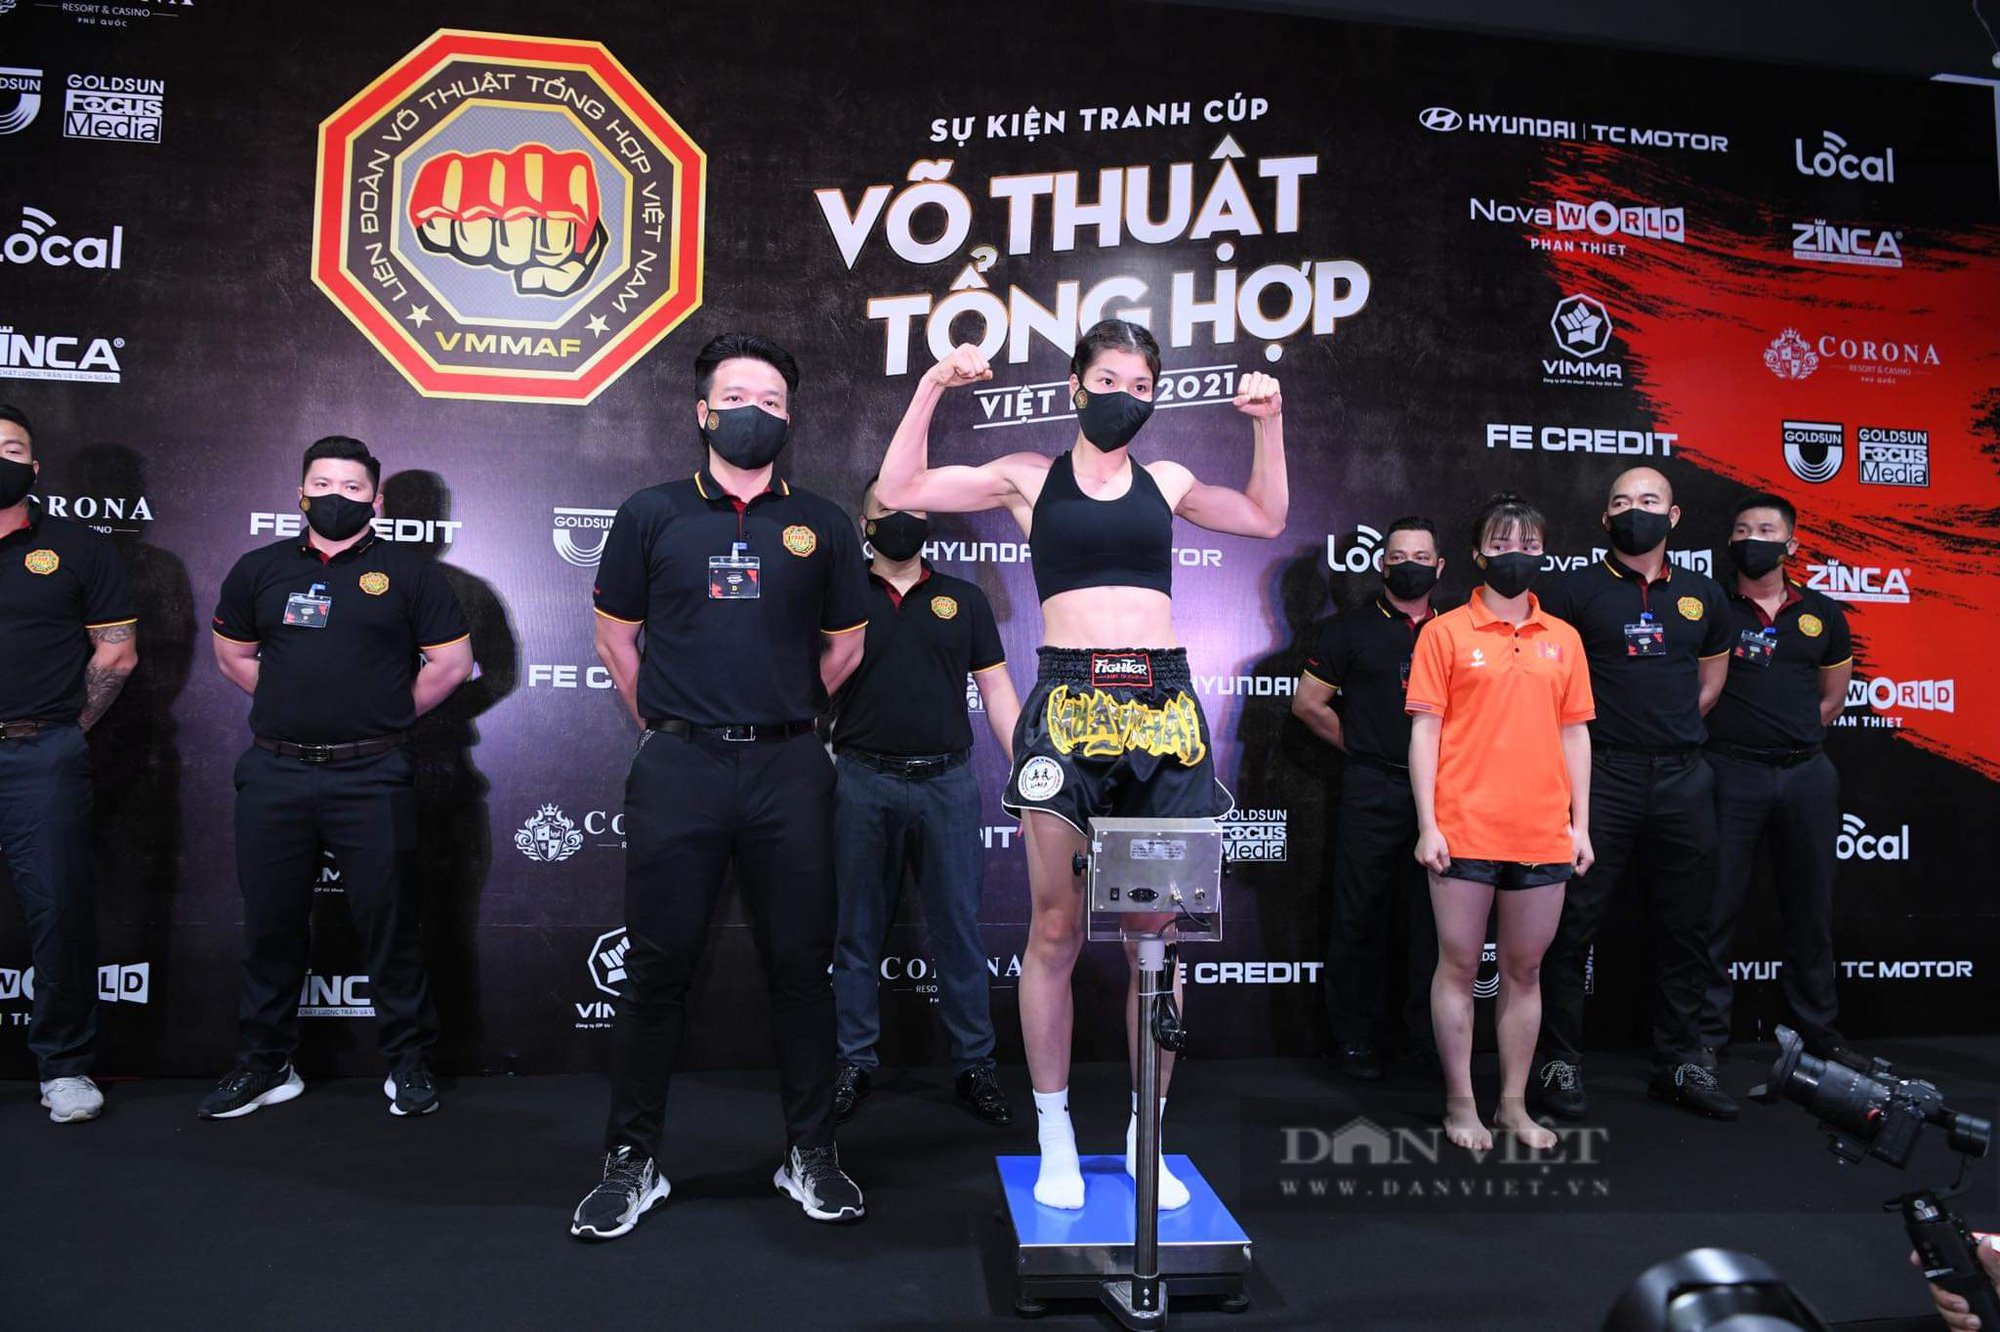 Sắp diễn ra giải đấu võ thuật tổng hợp MMA đầu tiên tại Việt Nam - Ảnh 3.